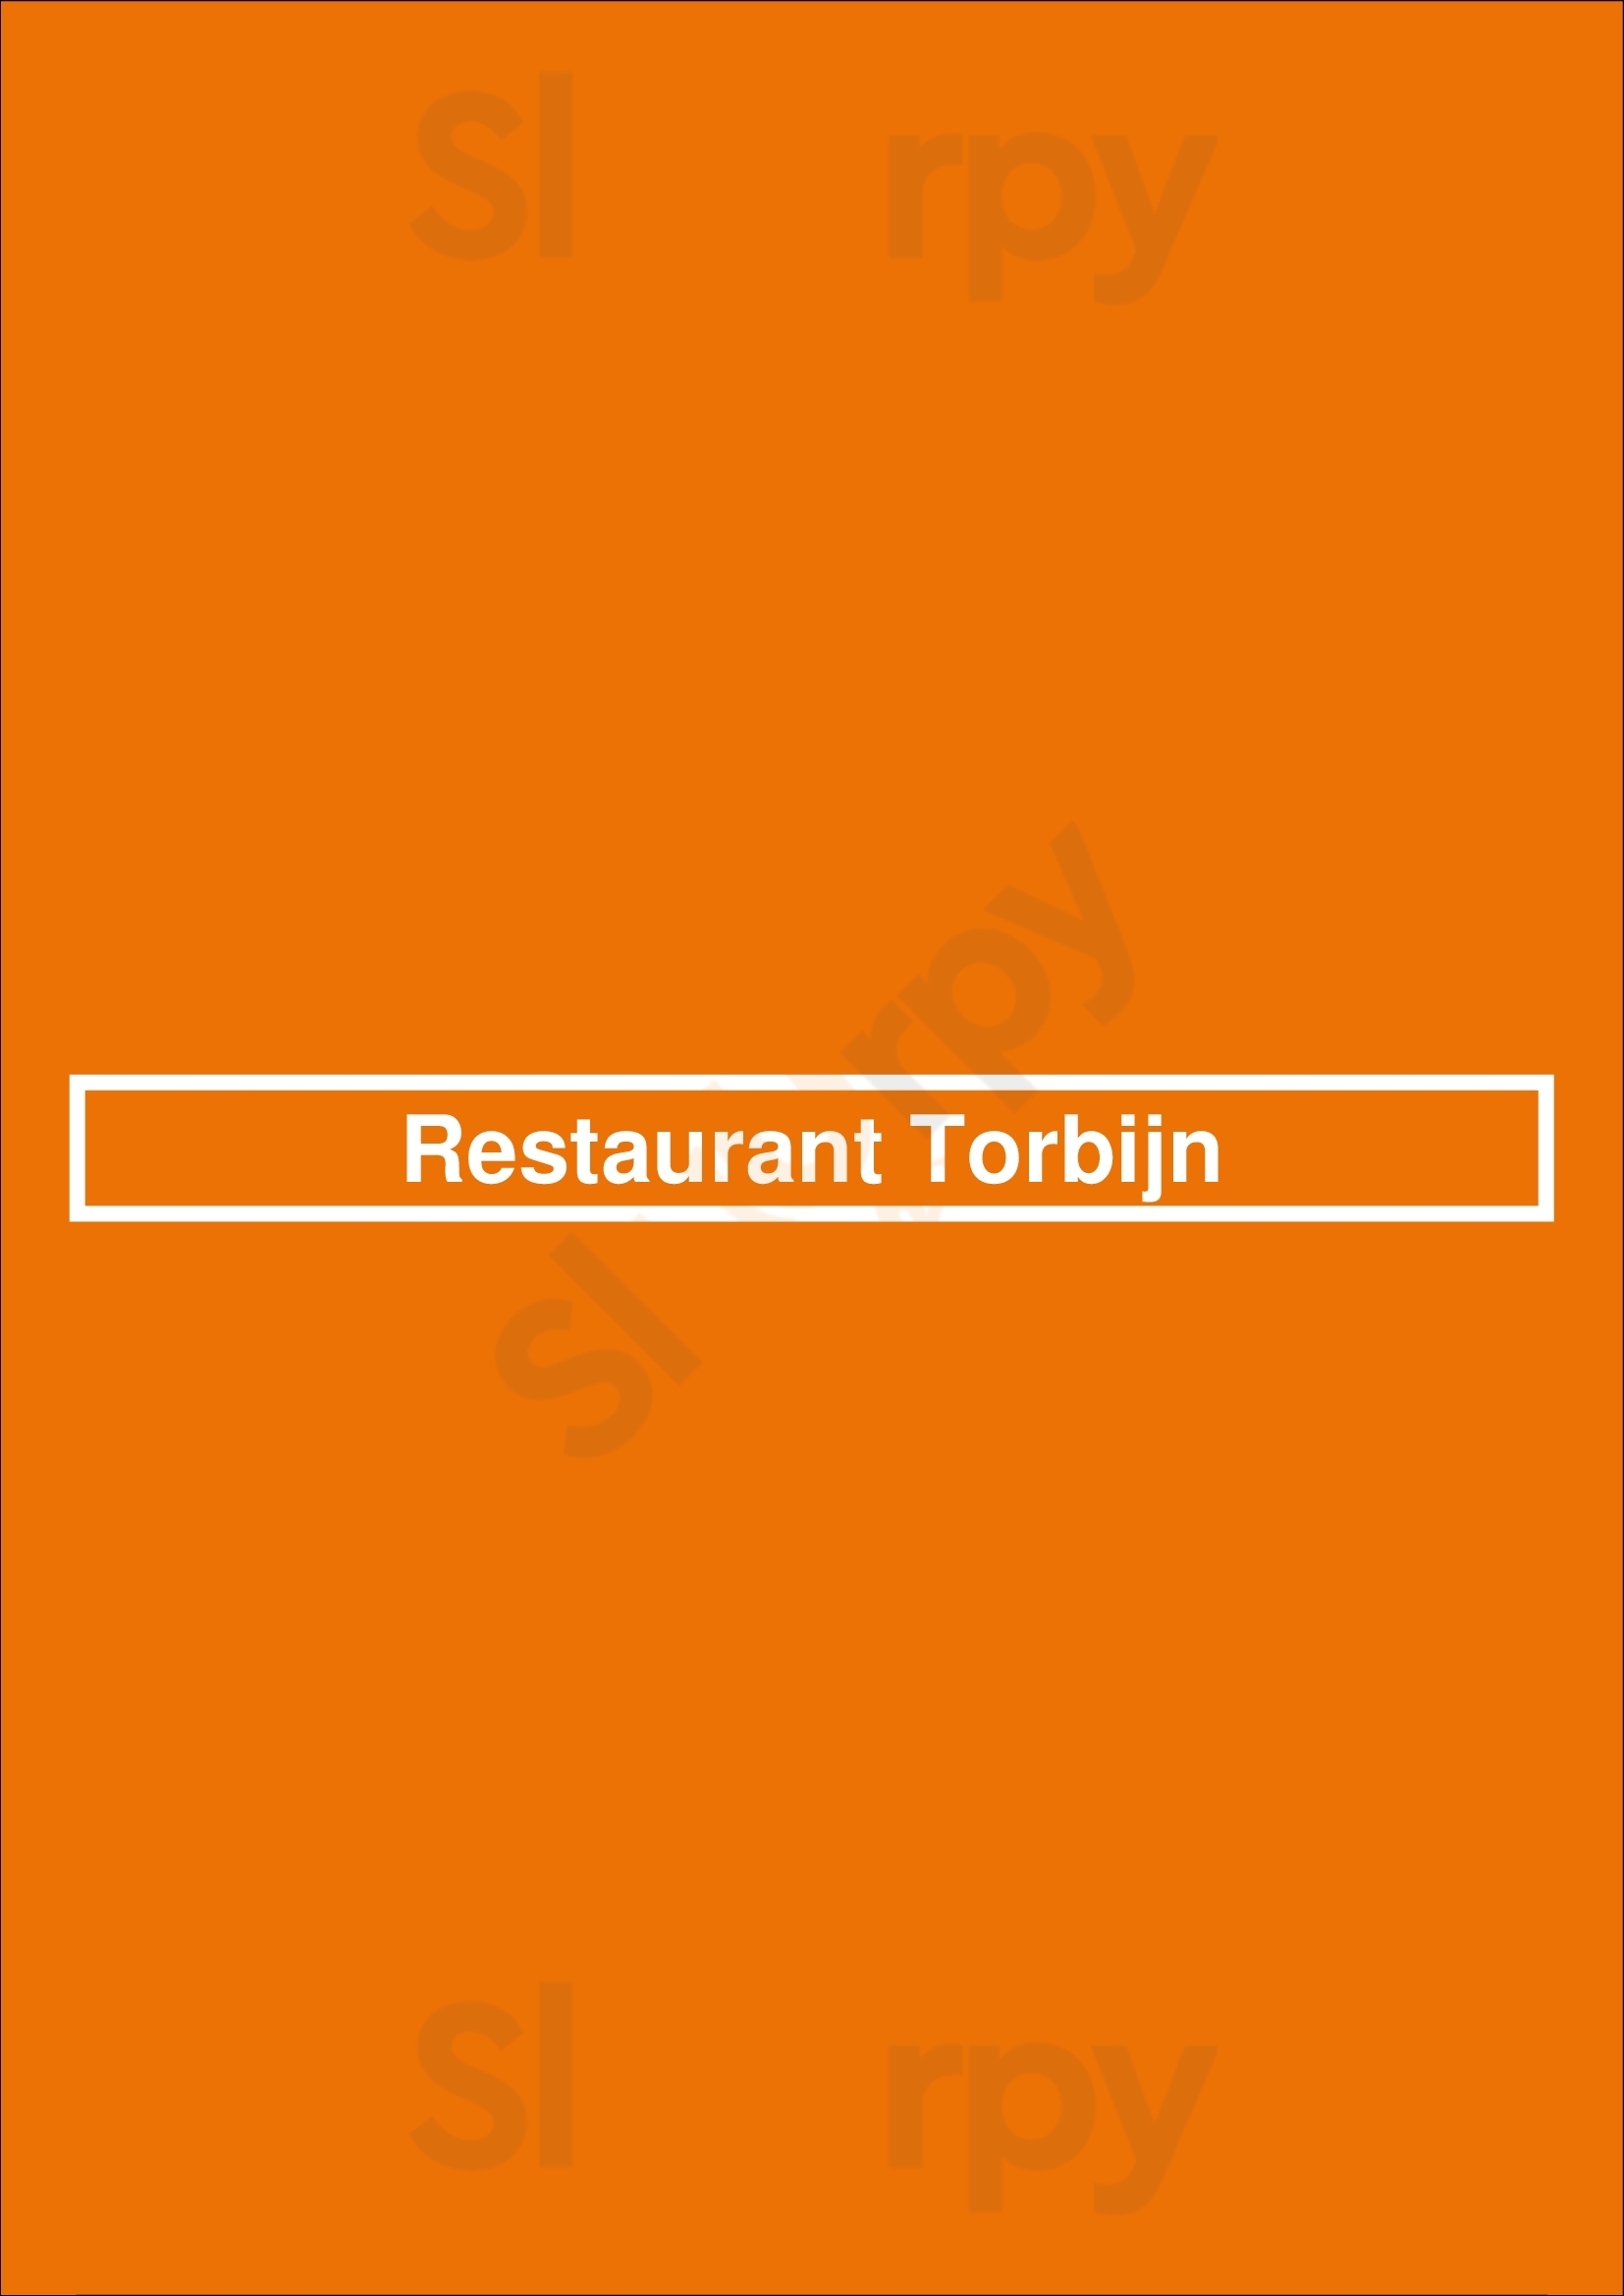 Restaurant Torbijn Doorn Menu - 1